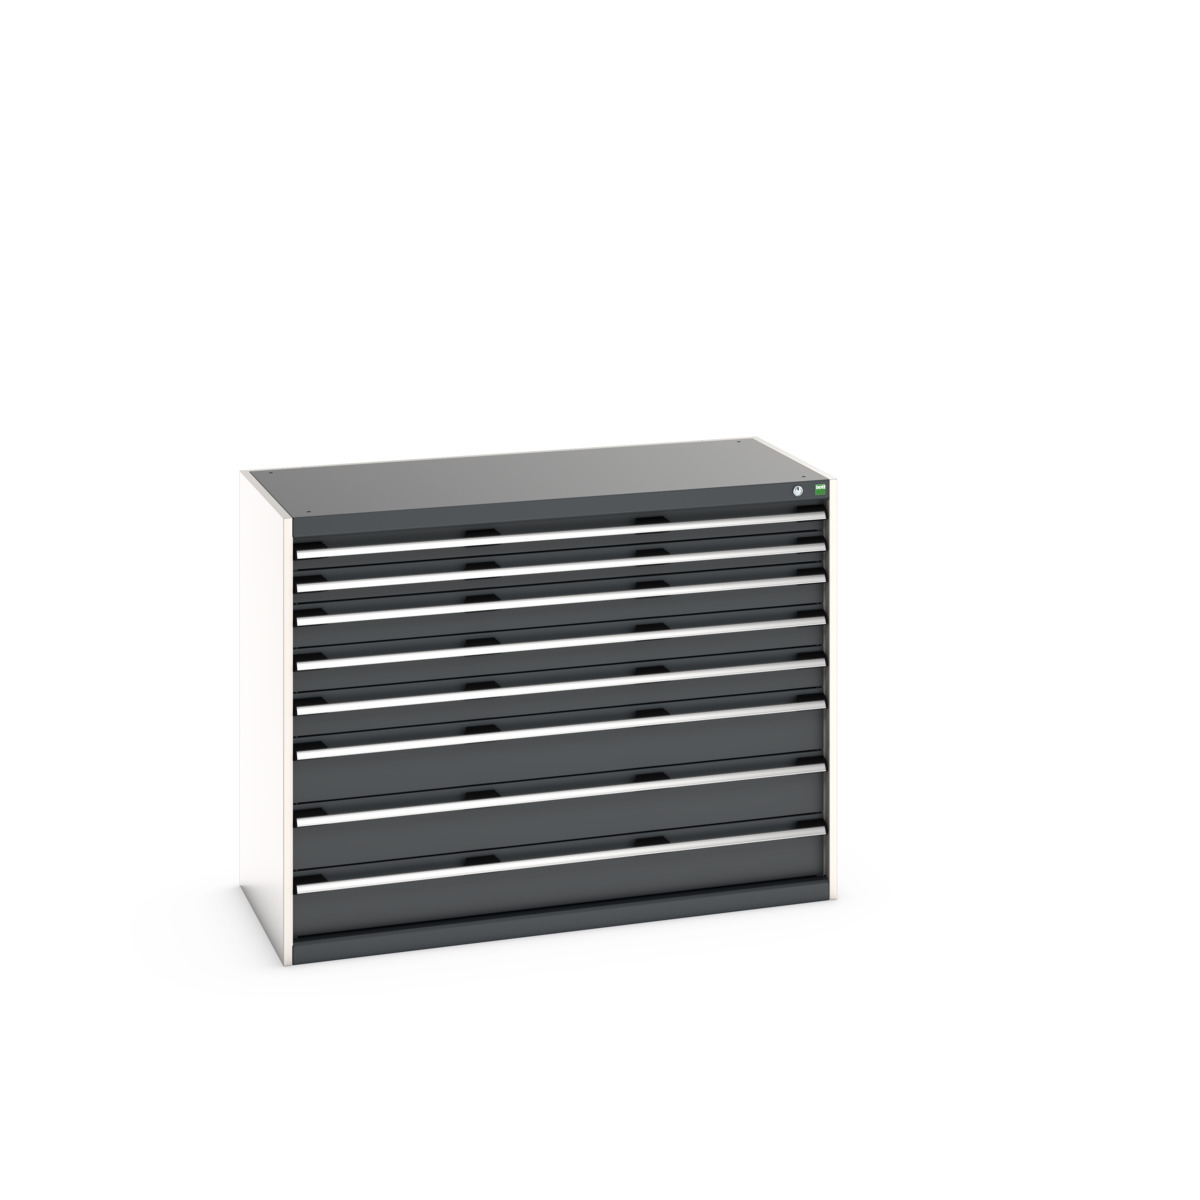 40022153.19V - cubio drawer cabinet